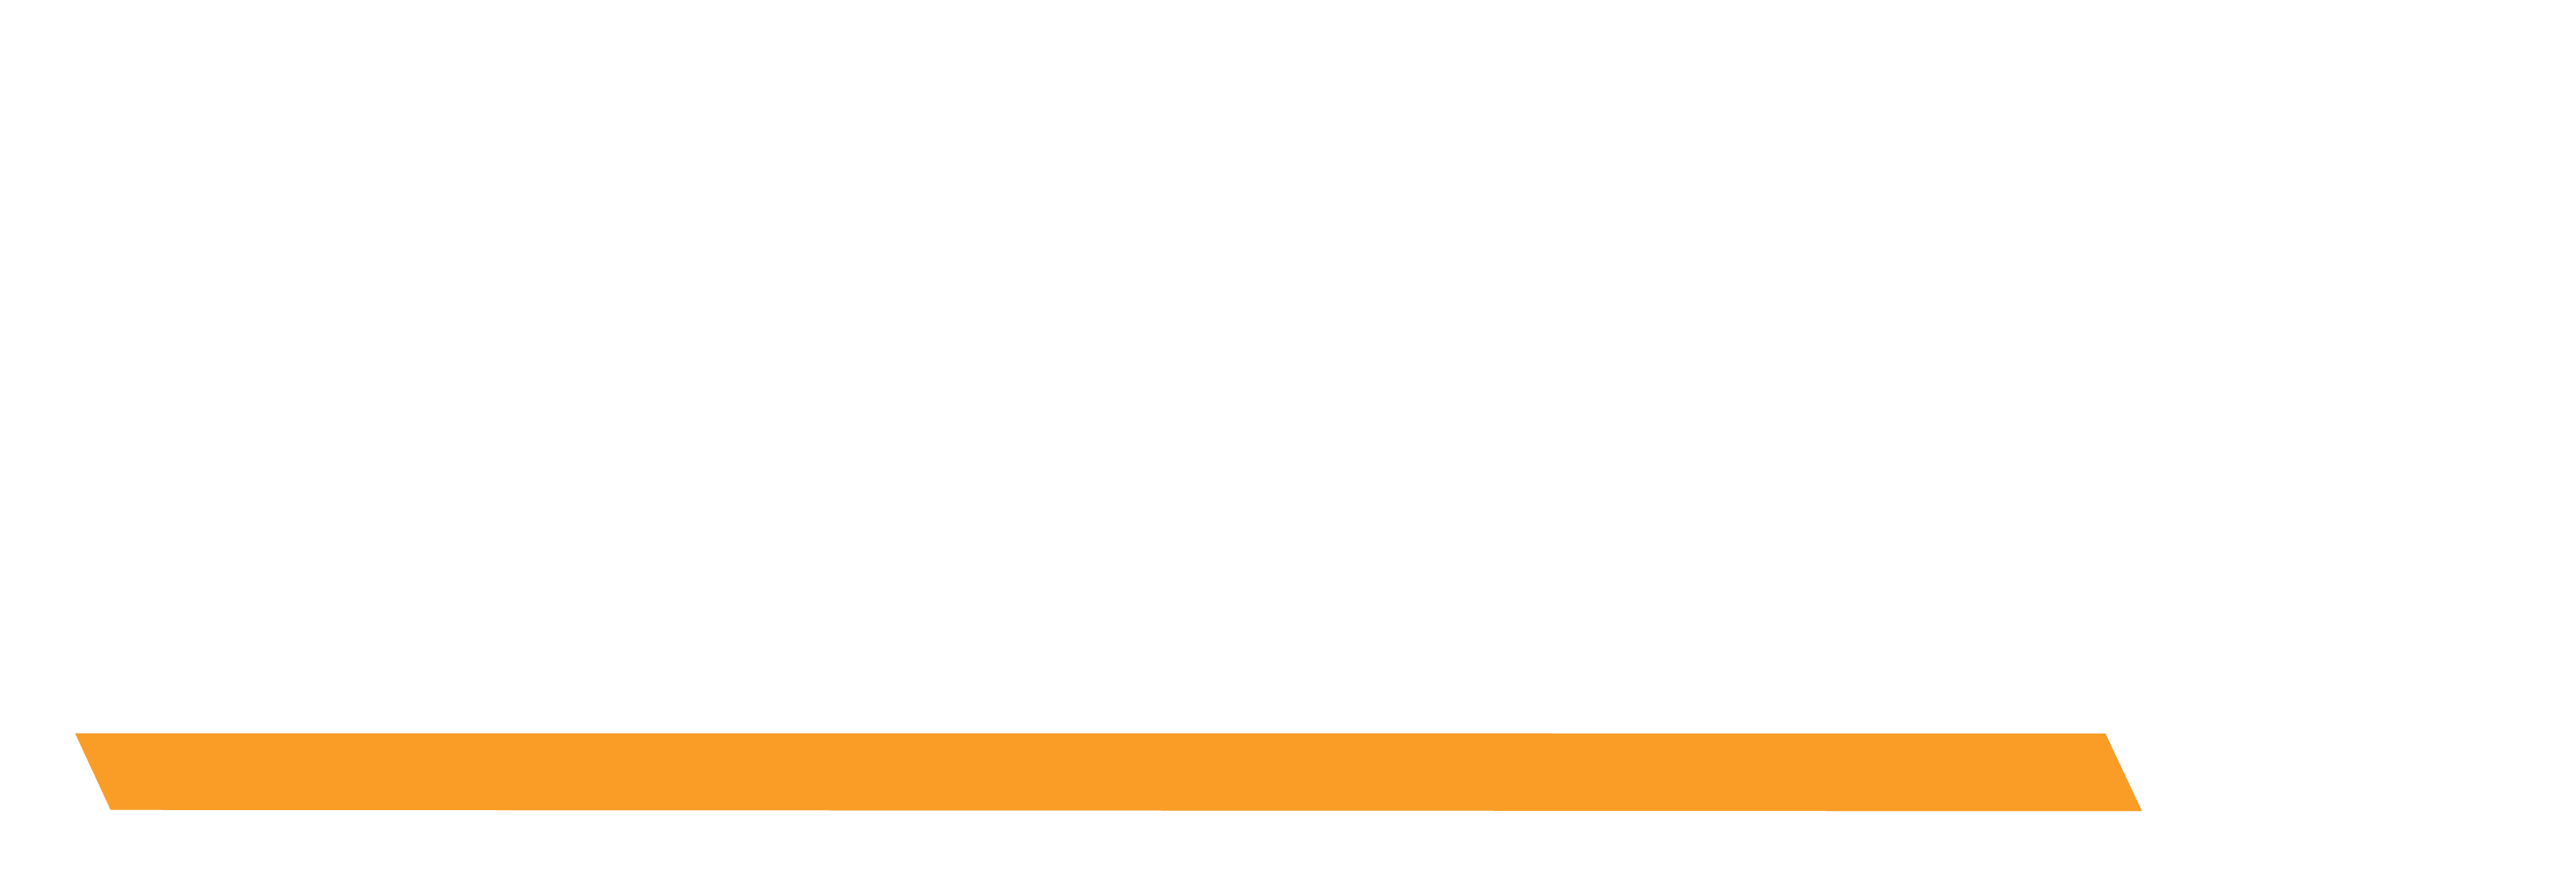 Leeboy Logo - ASCENDUM - LeeBoy